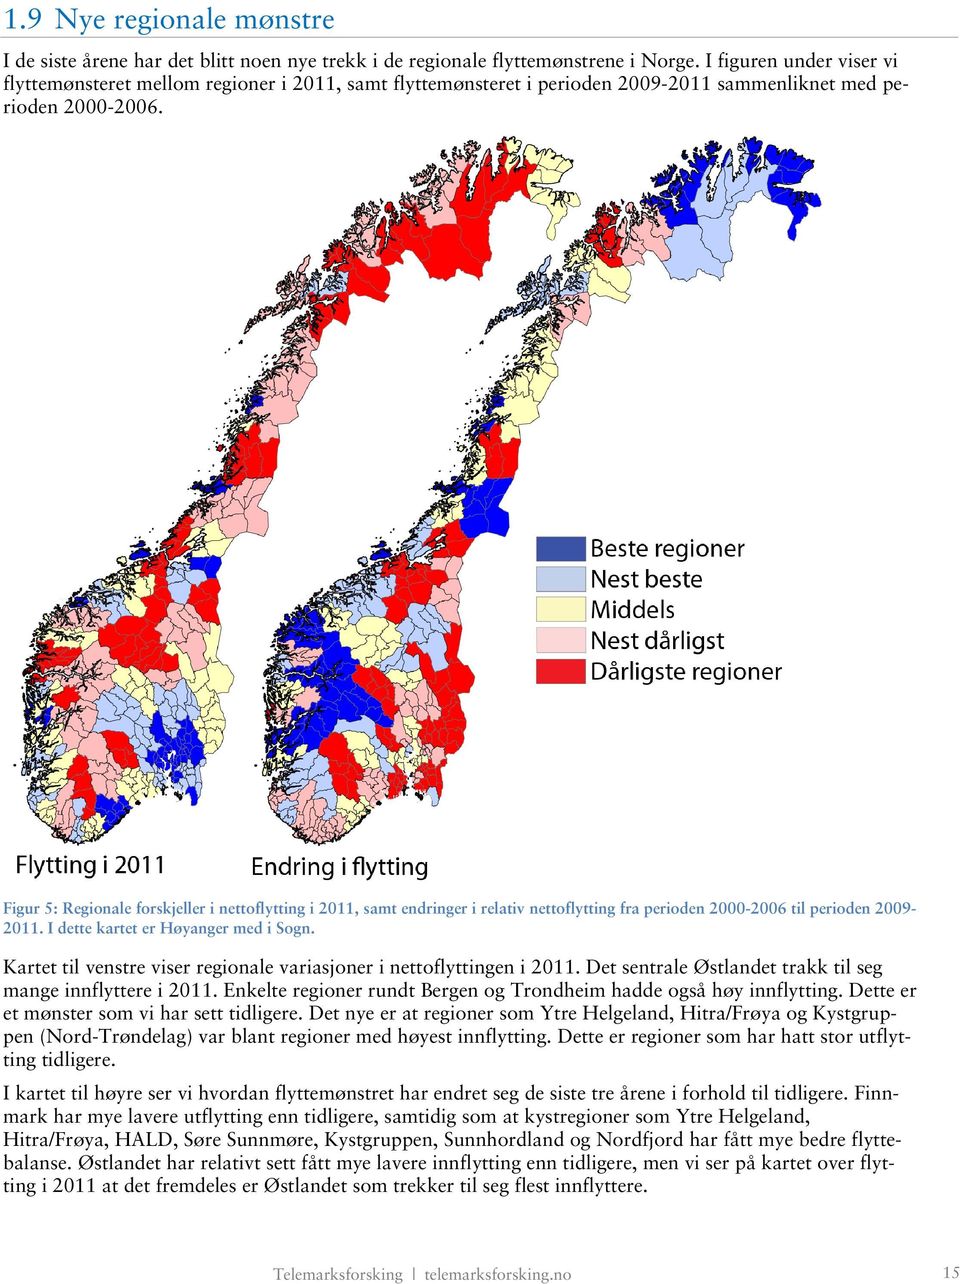 Figur 5: Regionale forskjeller i nettoflytting i 2011, samt endringer i relativ nettoflytting fra perioden 2000-2006 til perioden 2009-2011. I dette kartet er Høyanger med i Sogn.